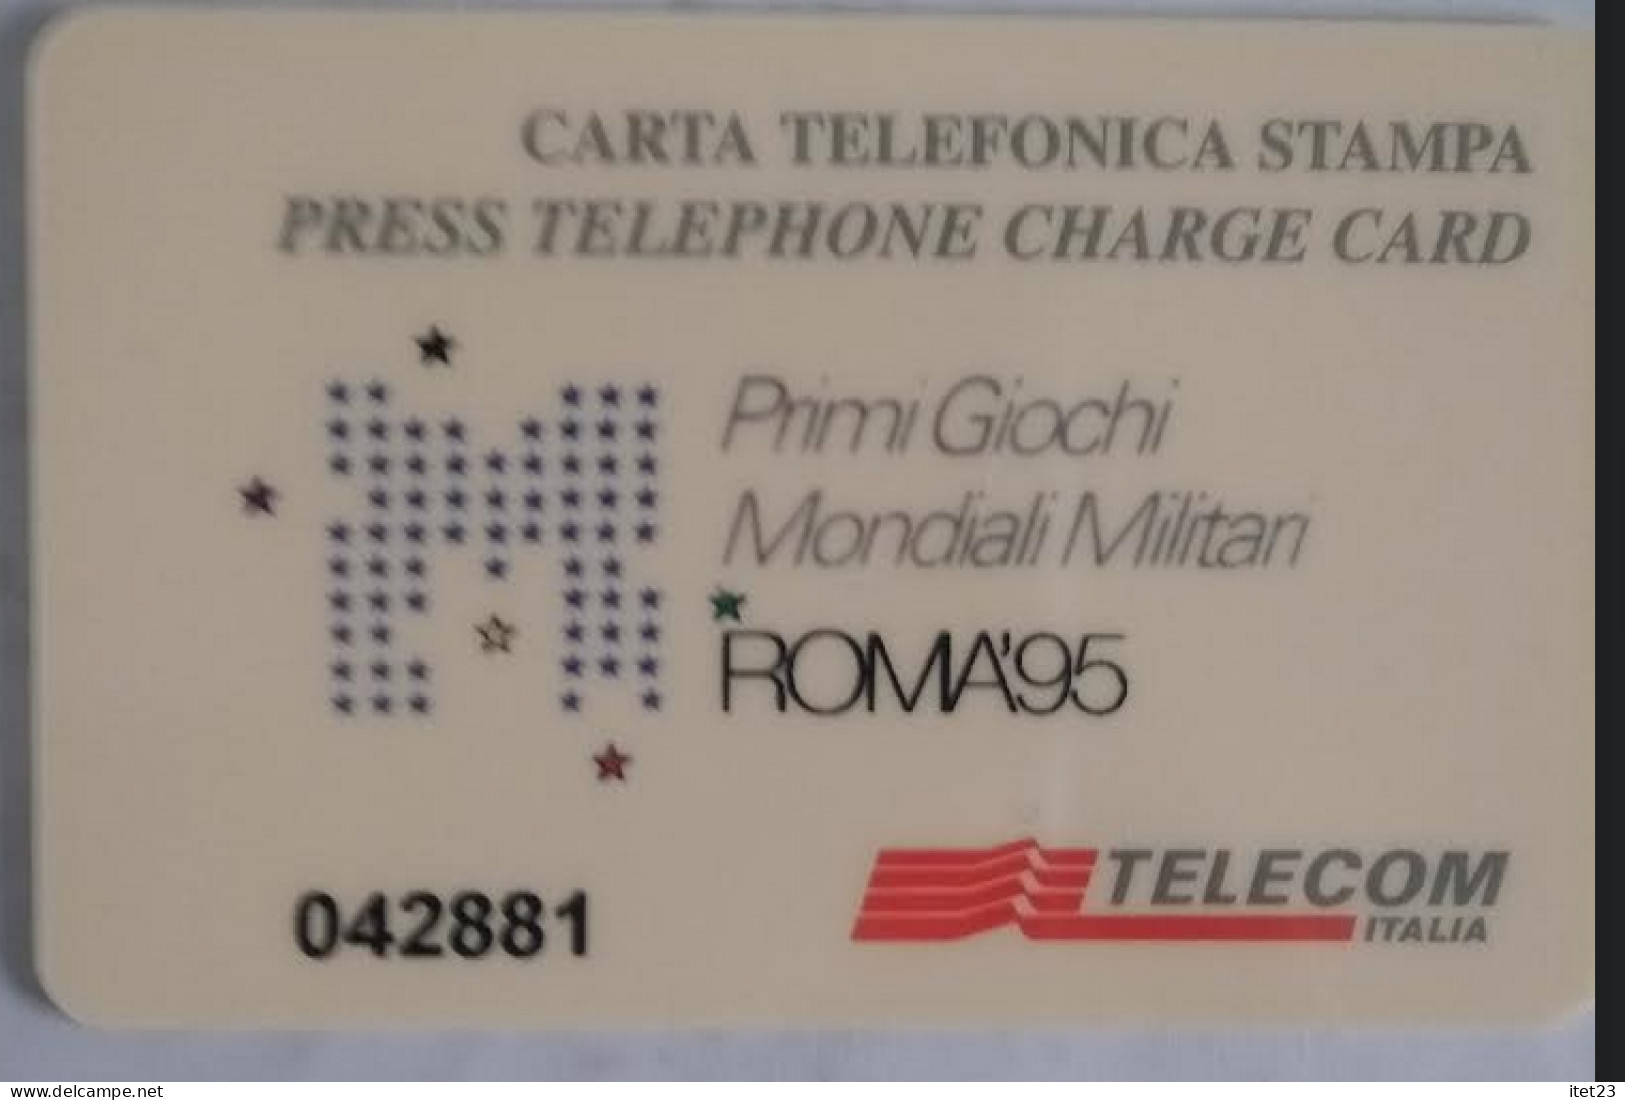 SCHEDA TELEFONICA ITALIANA - USI SPECIALI-STAMPA- ROMA 95- PRIMI GIOCHI MONDIALI MILITARI C&C 4048 - Collezioni